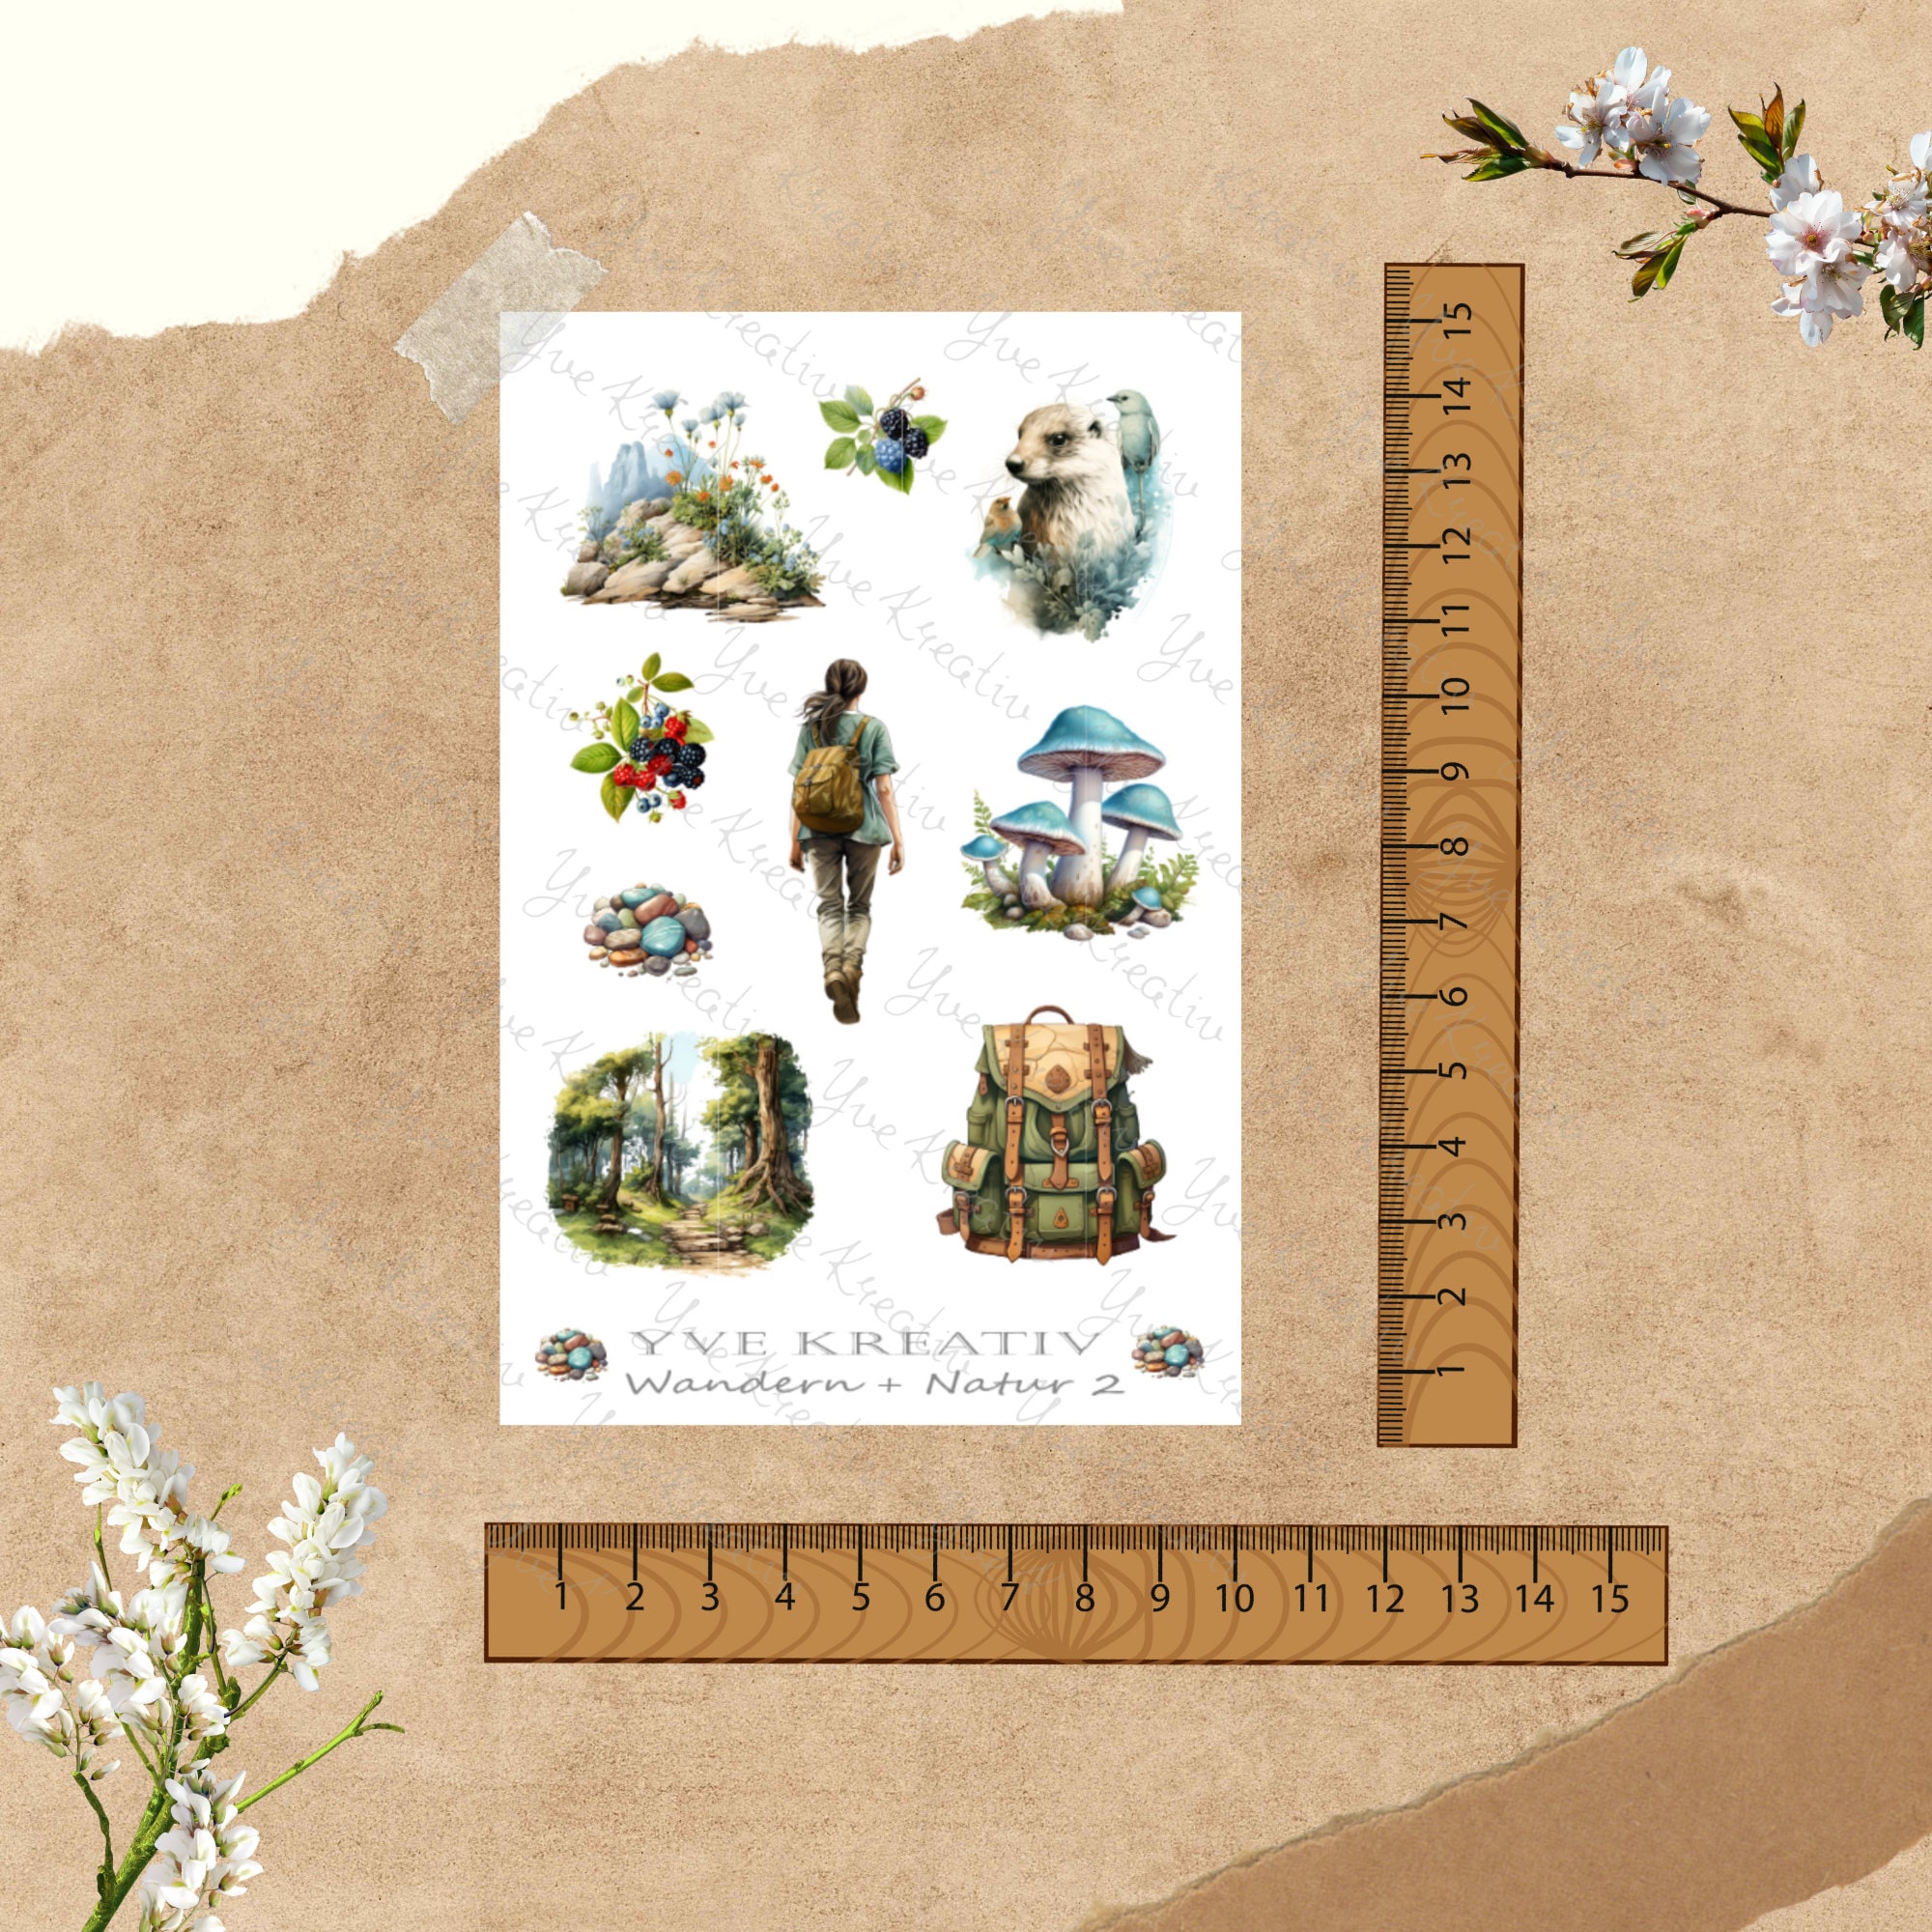 Sticker Bogen - Wandern Natur Wald | Sticker Set - Journal Sticker - Aufkleber 4 Stickerbogen zur Auswahl in Weiß oder Transparent